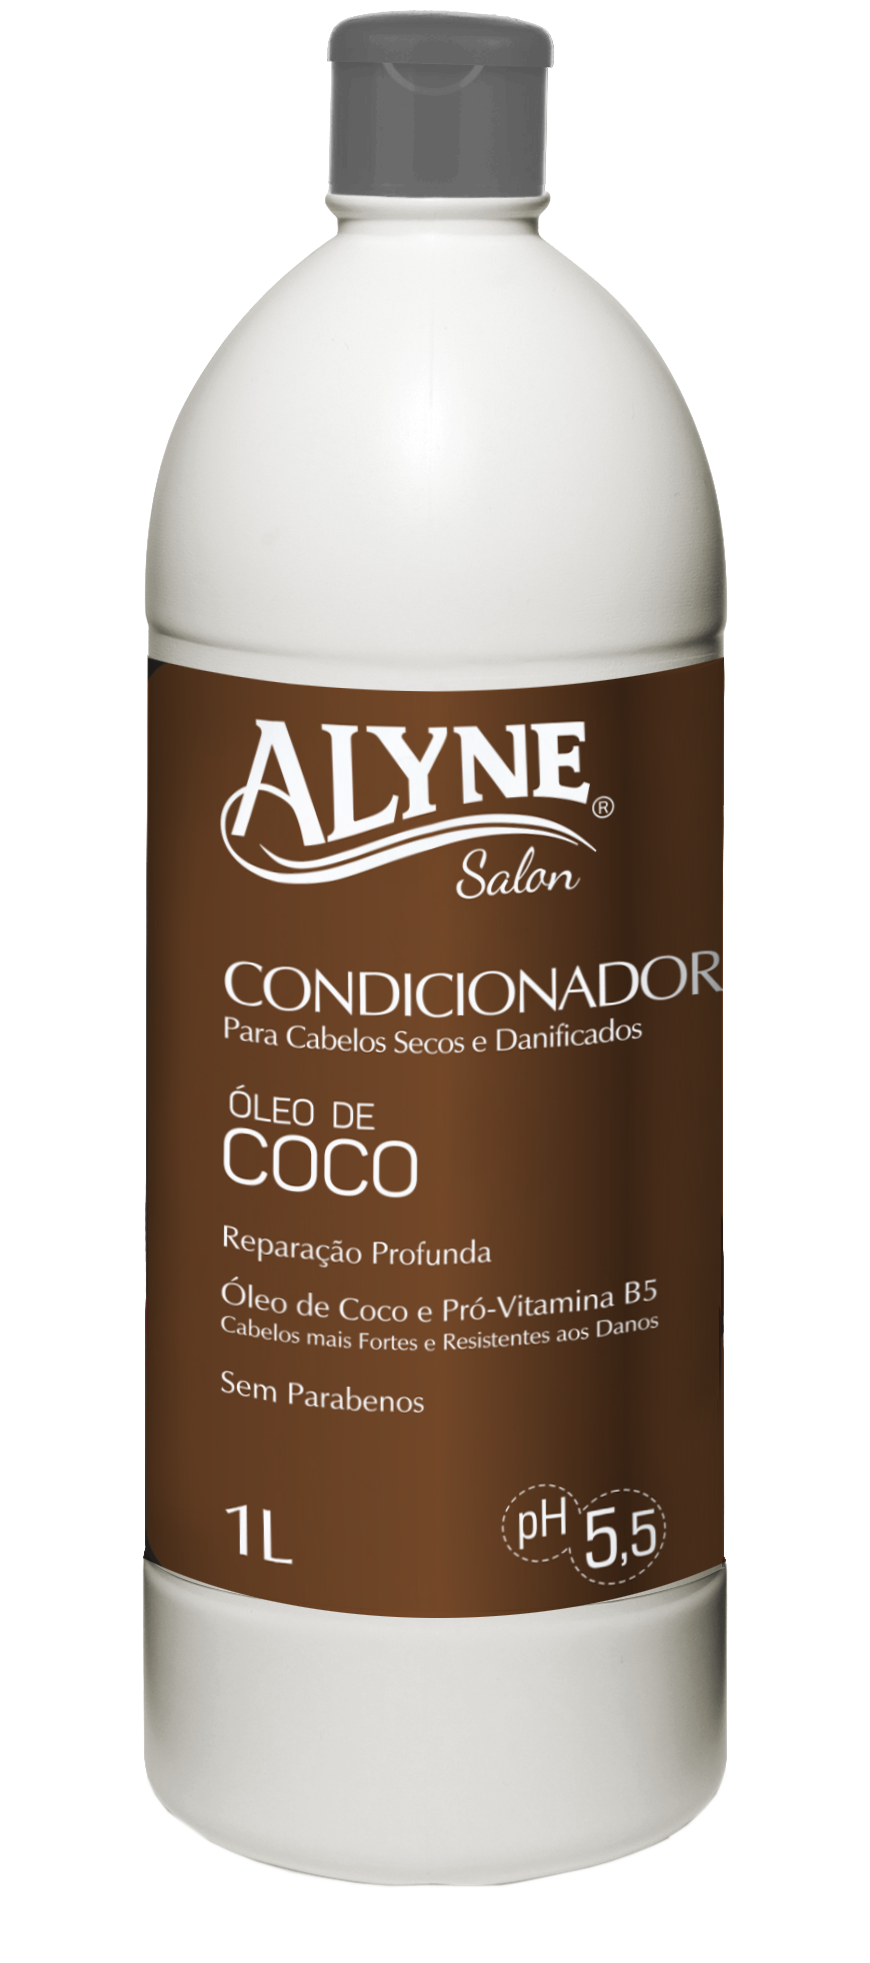 Condicionador Alyne Óleo de Coco 1L